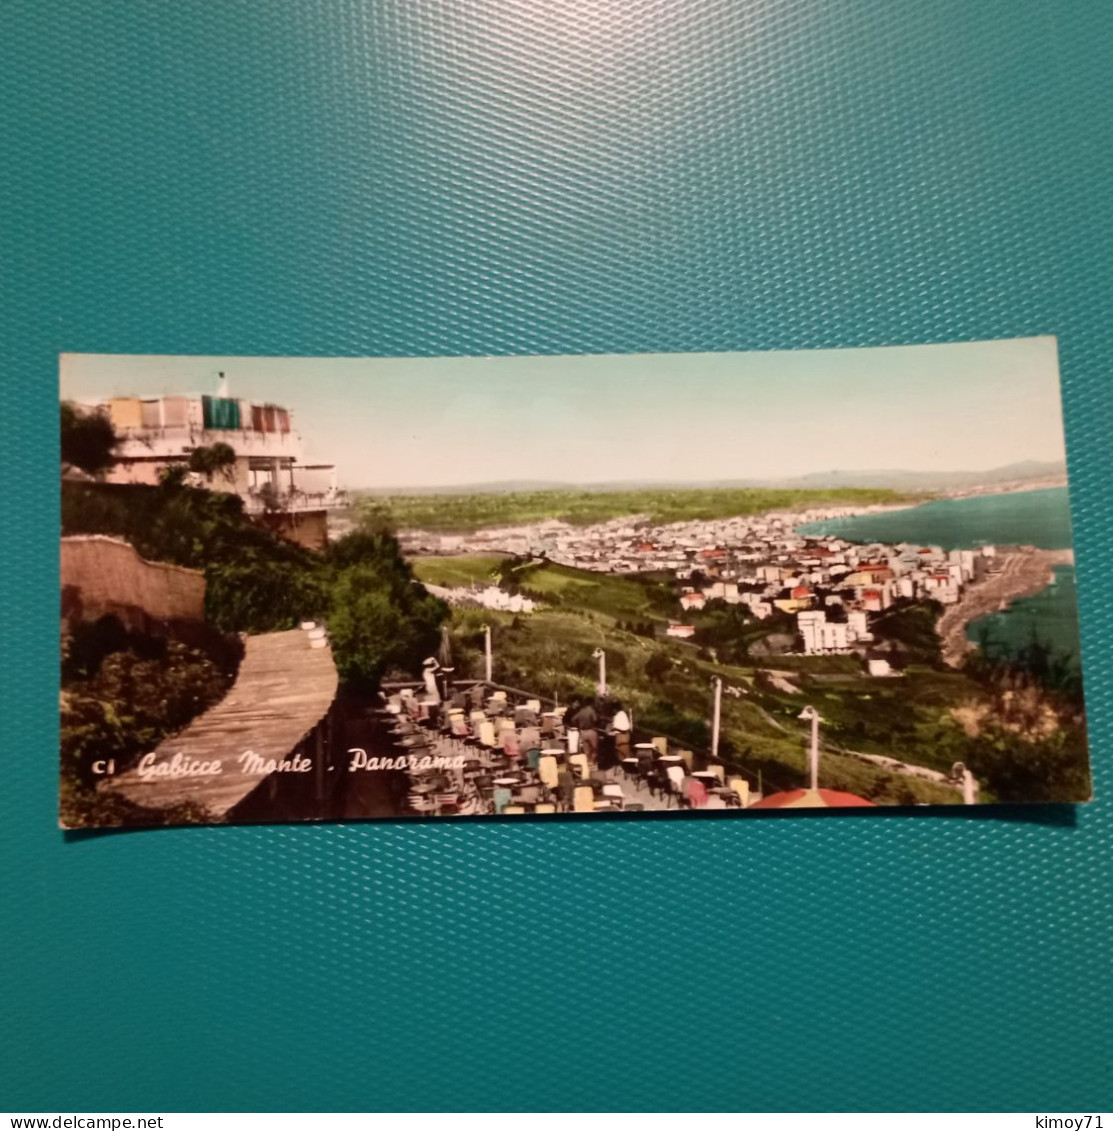 Cartolina Gabicce Monte - Panorama. Viaggiata 1963 - Pesaro